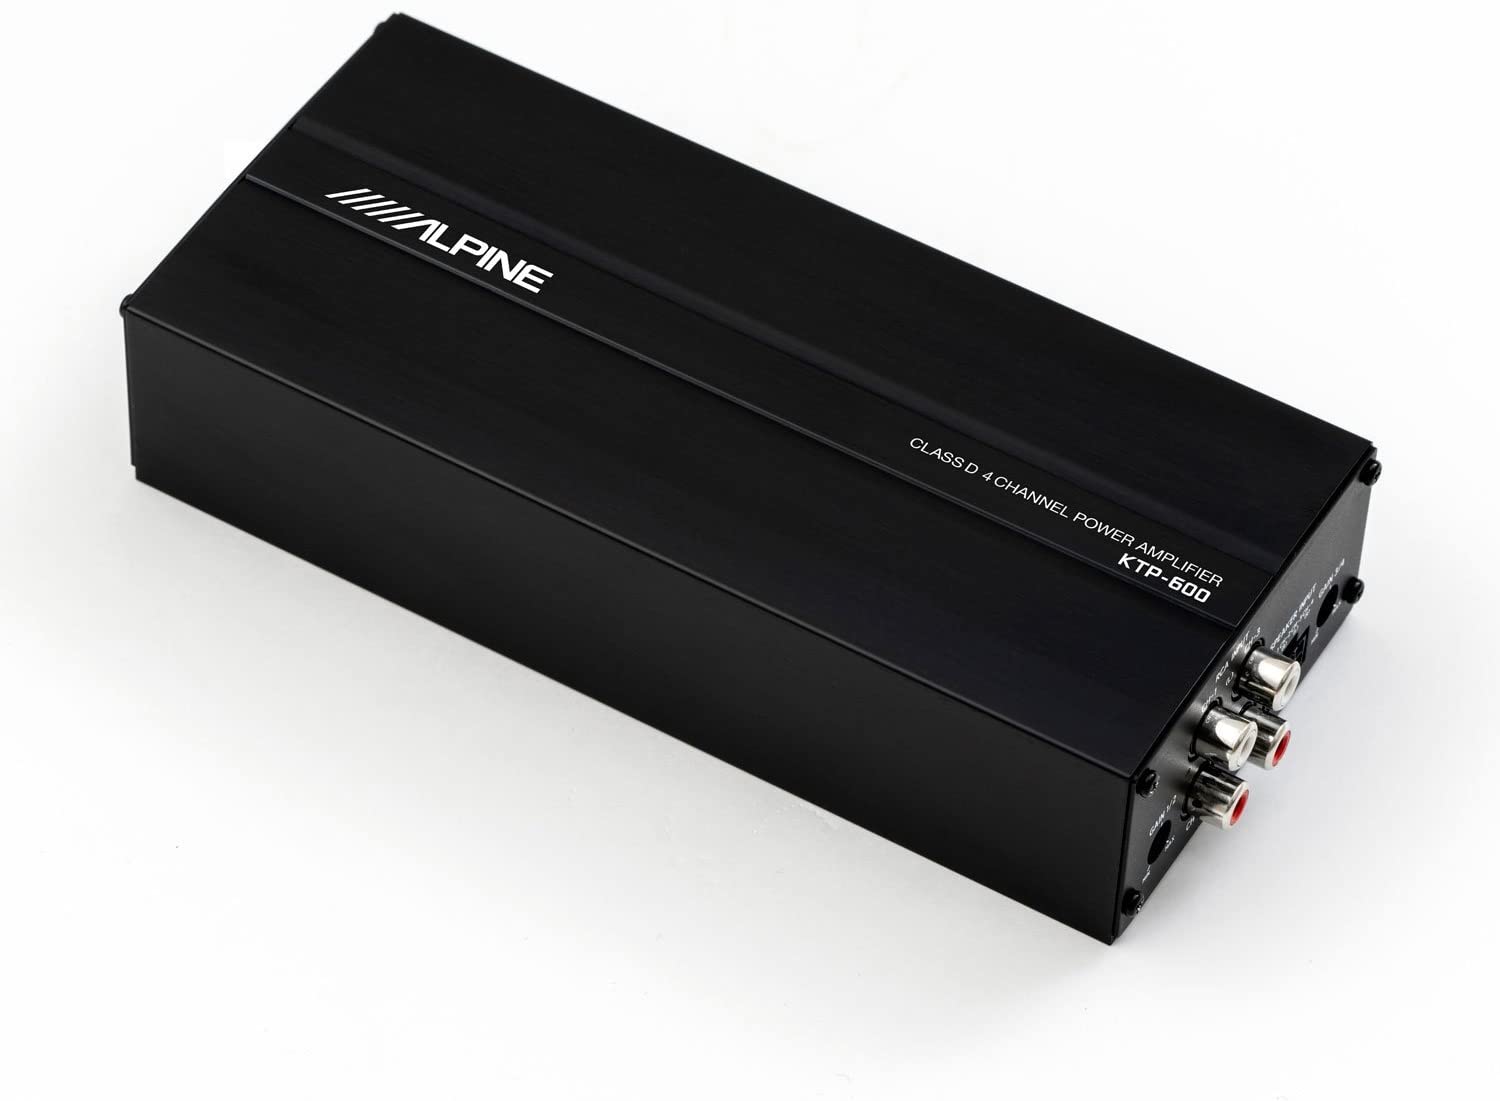 アルパイン 低価格化 ALPINE 4チャンネル 大注目 デジタルパワーアンプ KTP-600 コンパクト